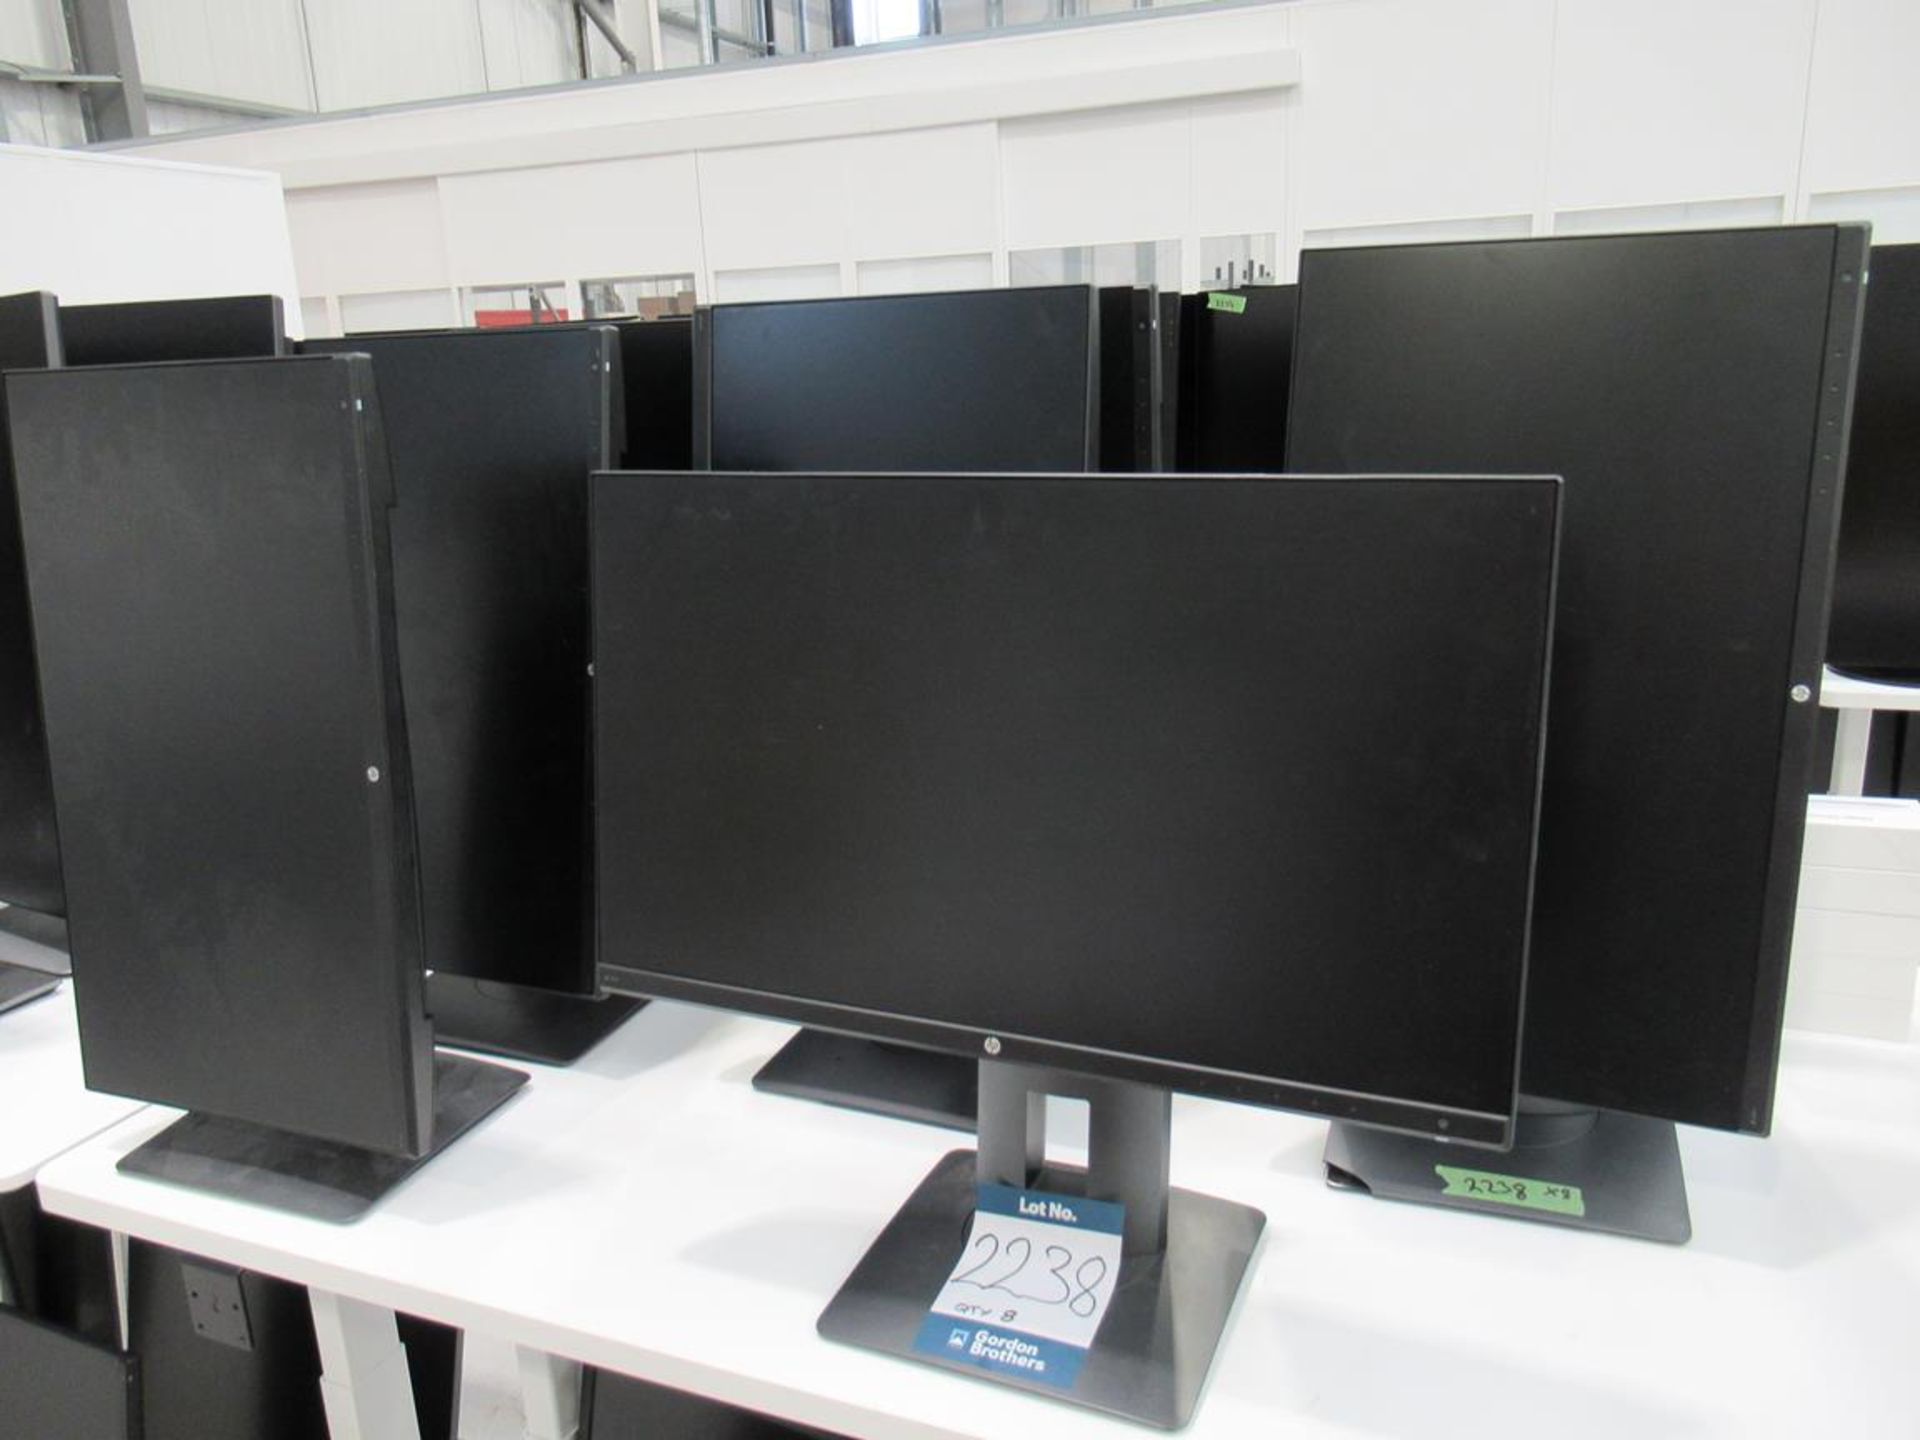 8x (no.) HP, Z24nf 23.8 monitors